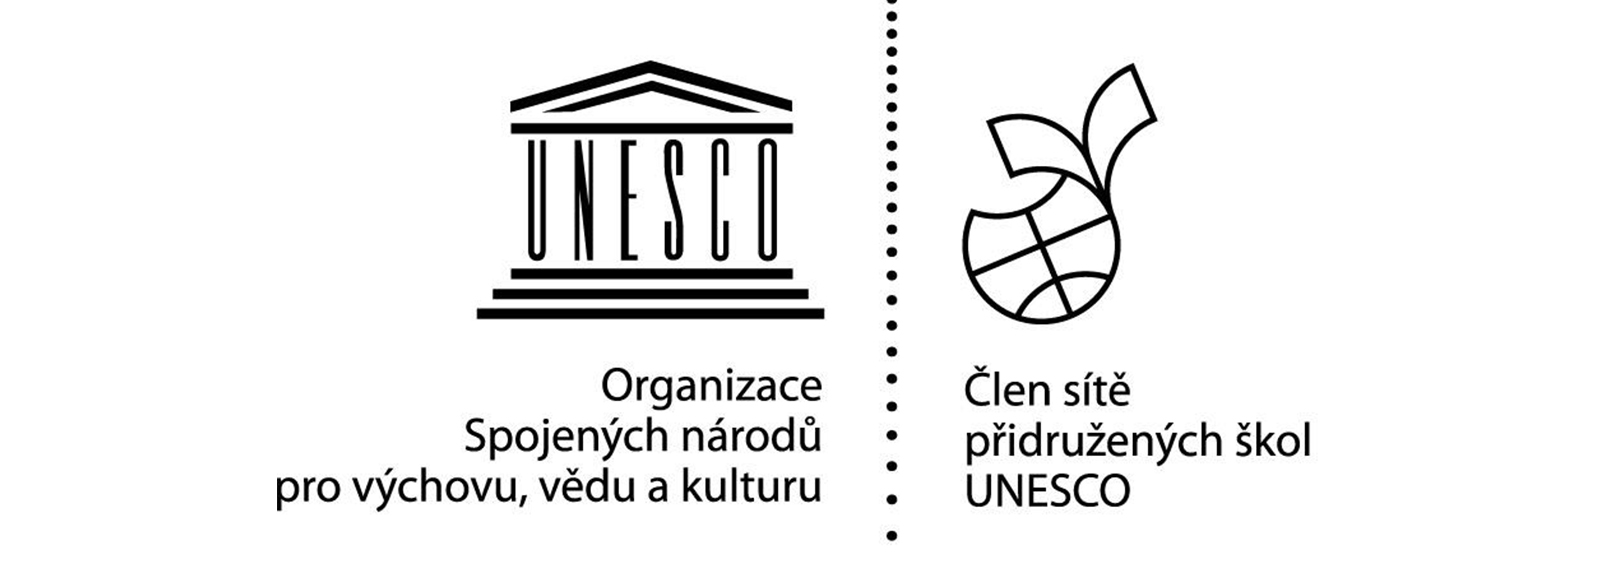 Logo přidružených škol UNESCO